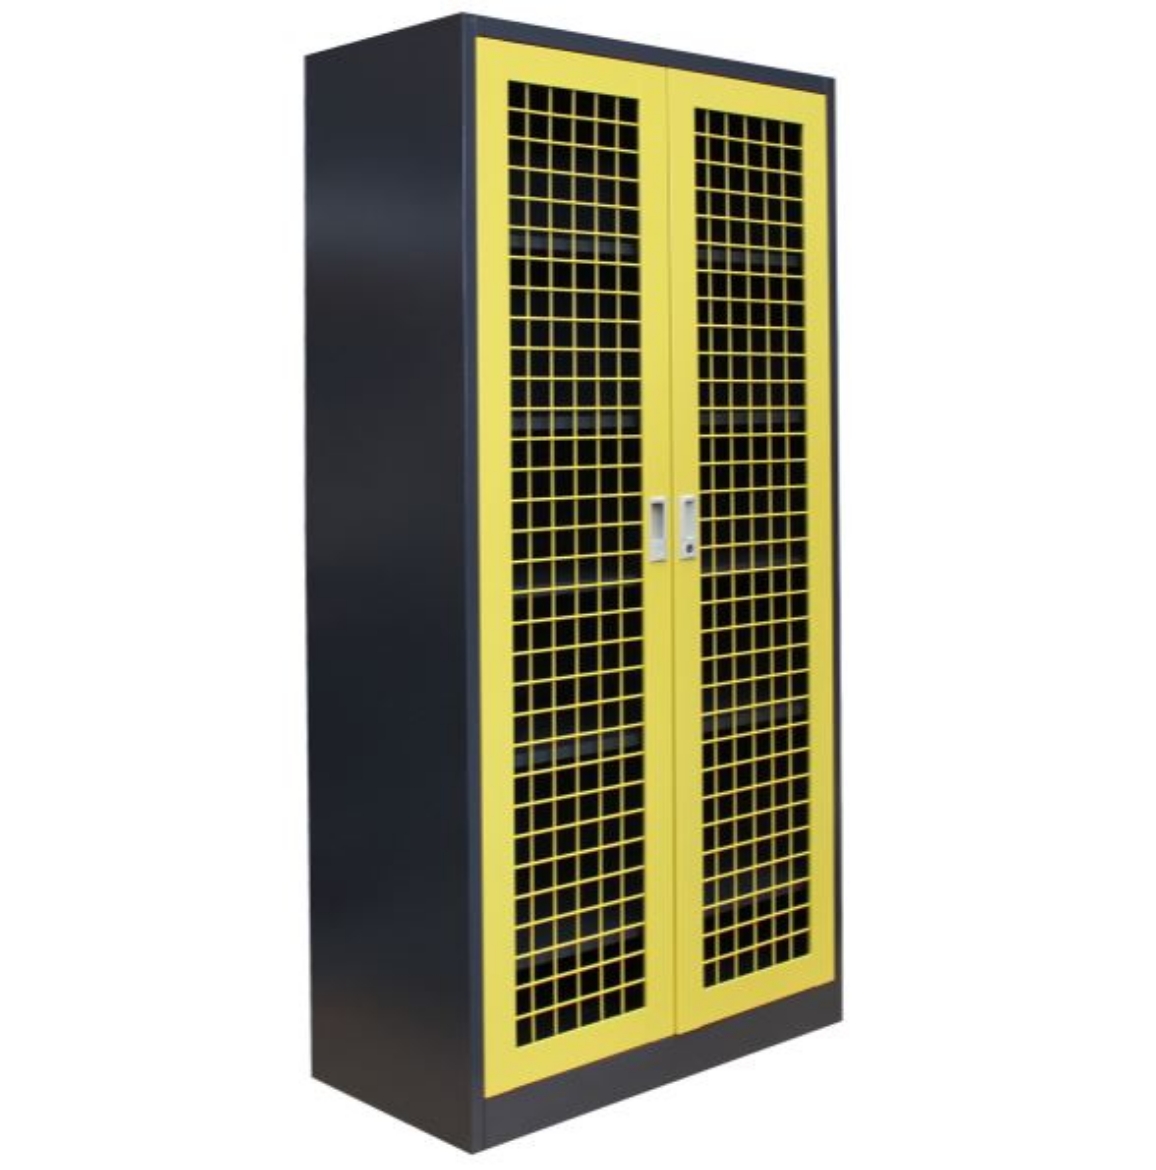 Picture of Mesh 2 Door Cabinet - Graphite Ripple with Yellow Mesh Doors